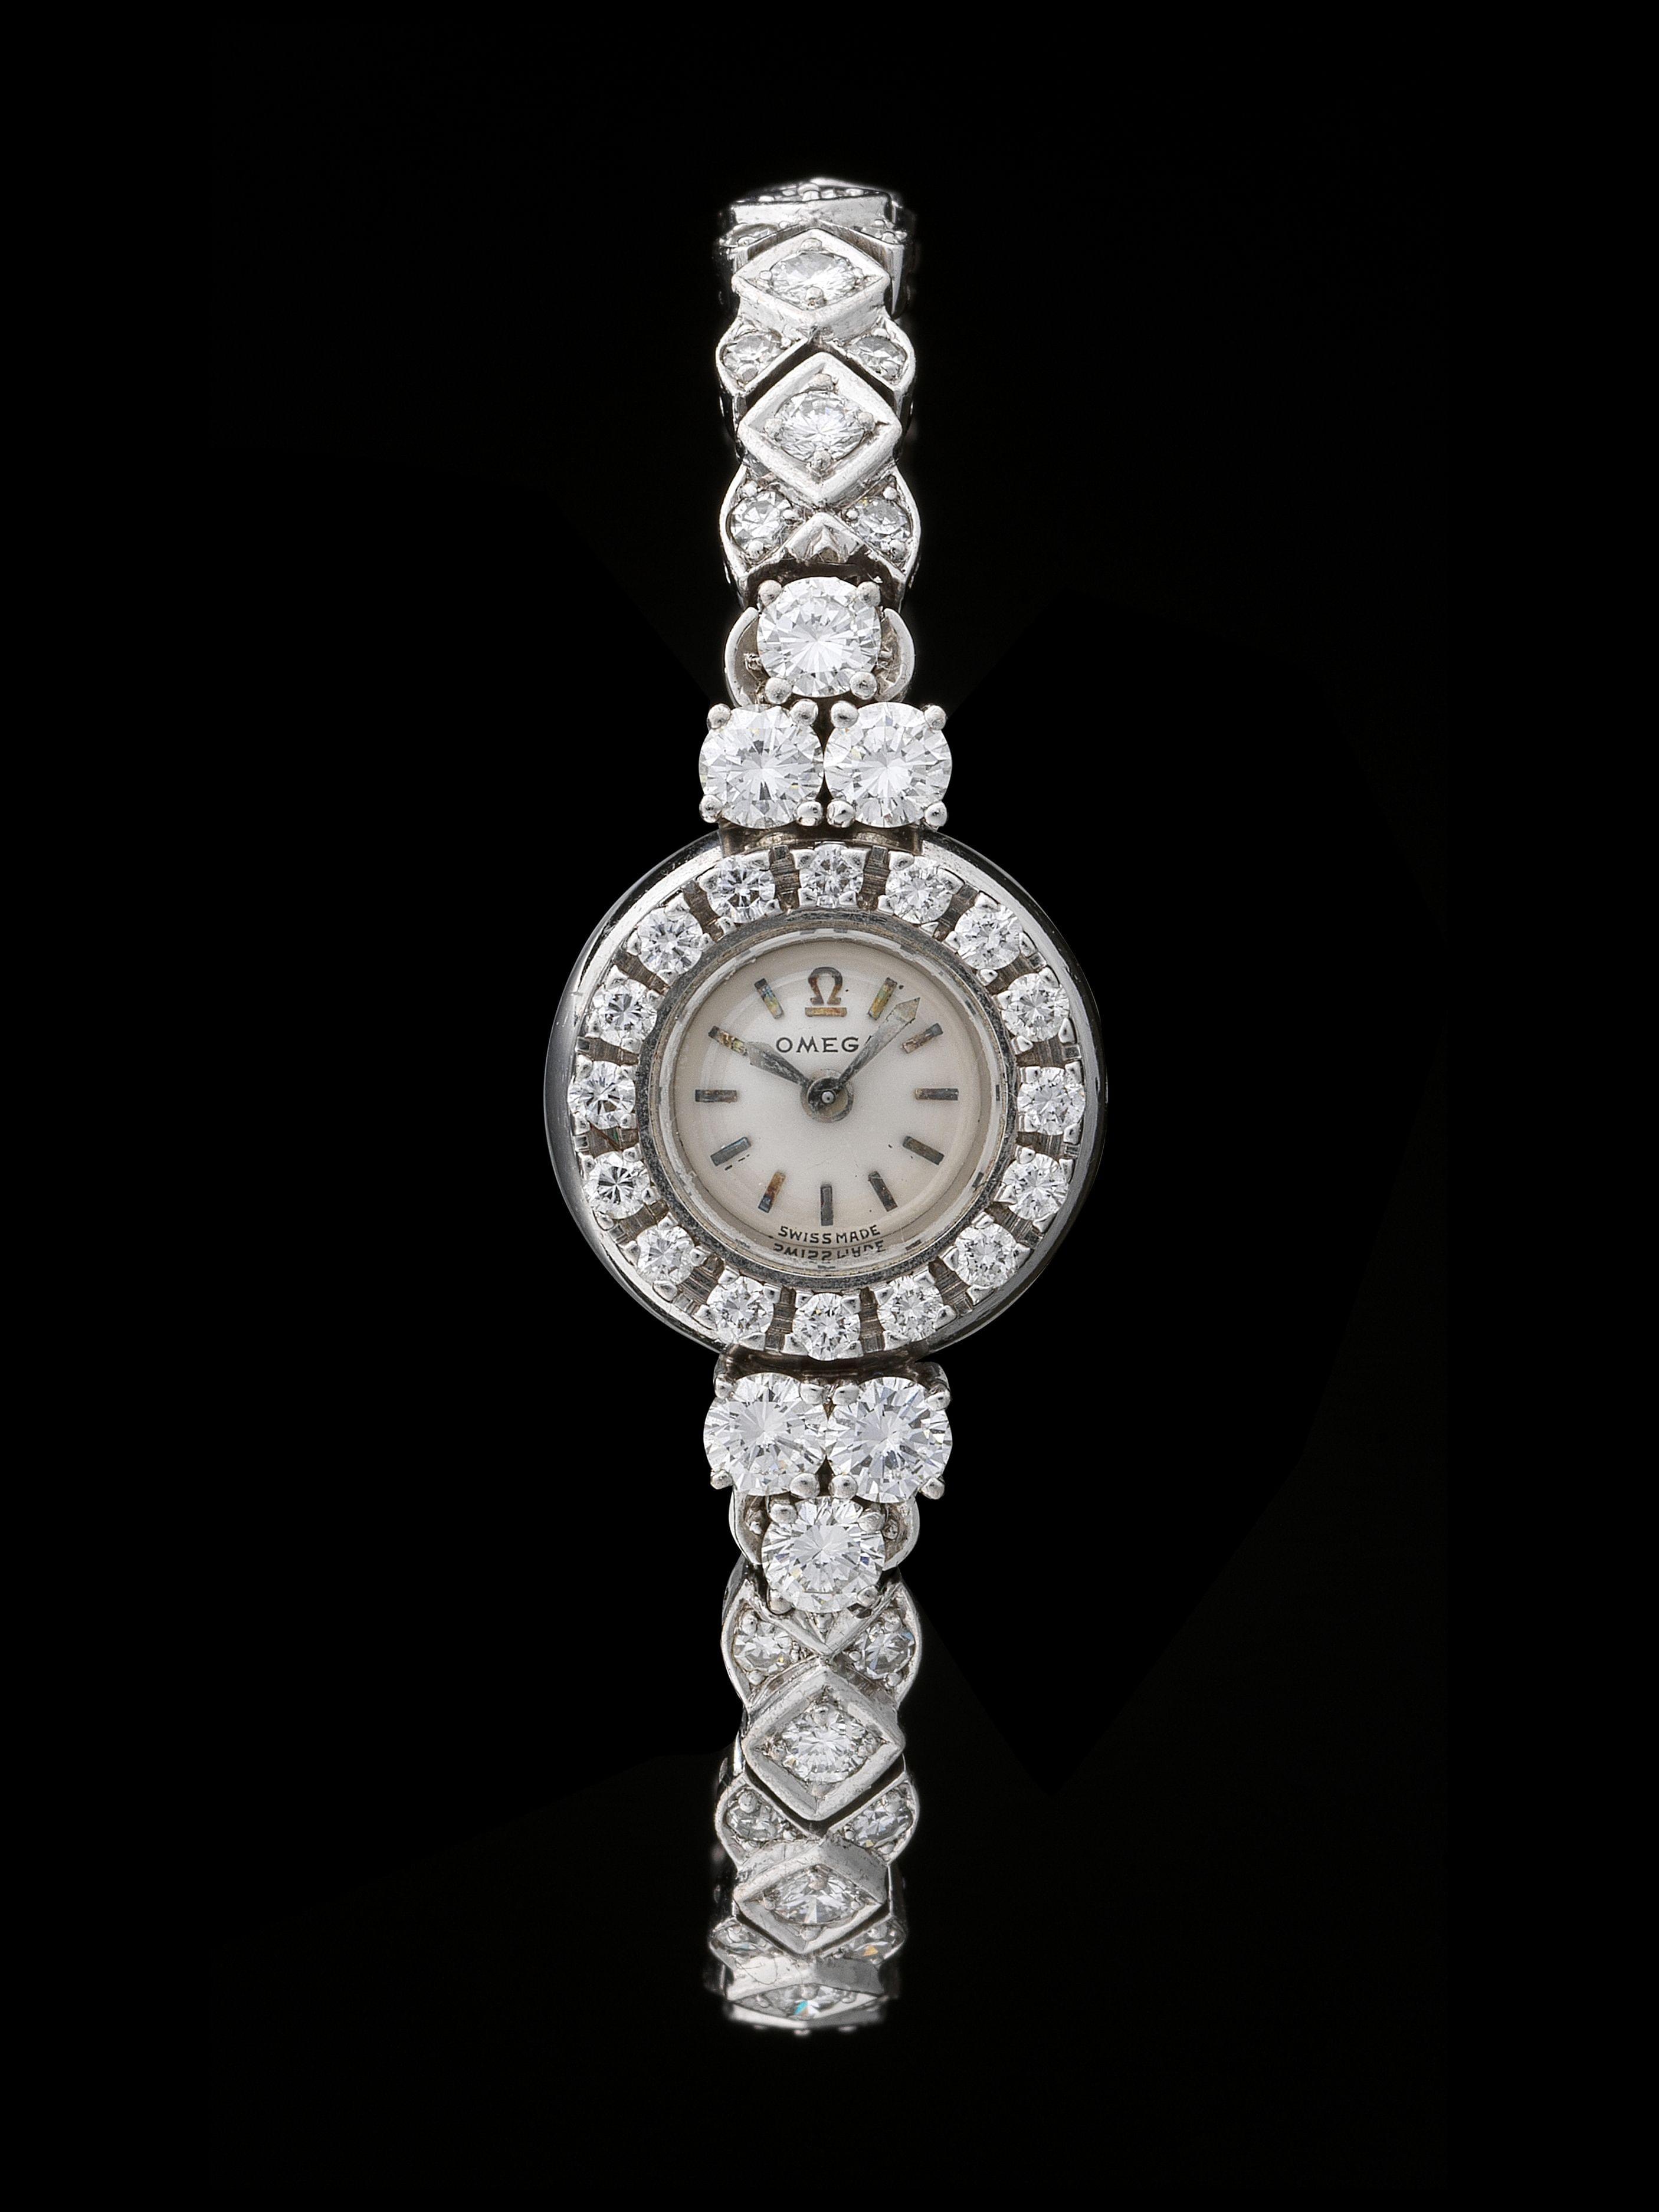 Omega, montre-bracelet ronde mécanique entièrement pavée de diamants (total env. 3 ct)